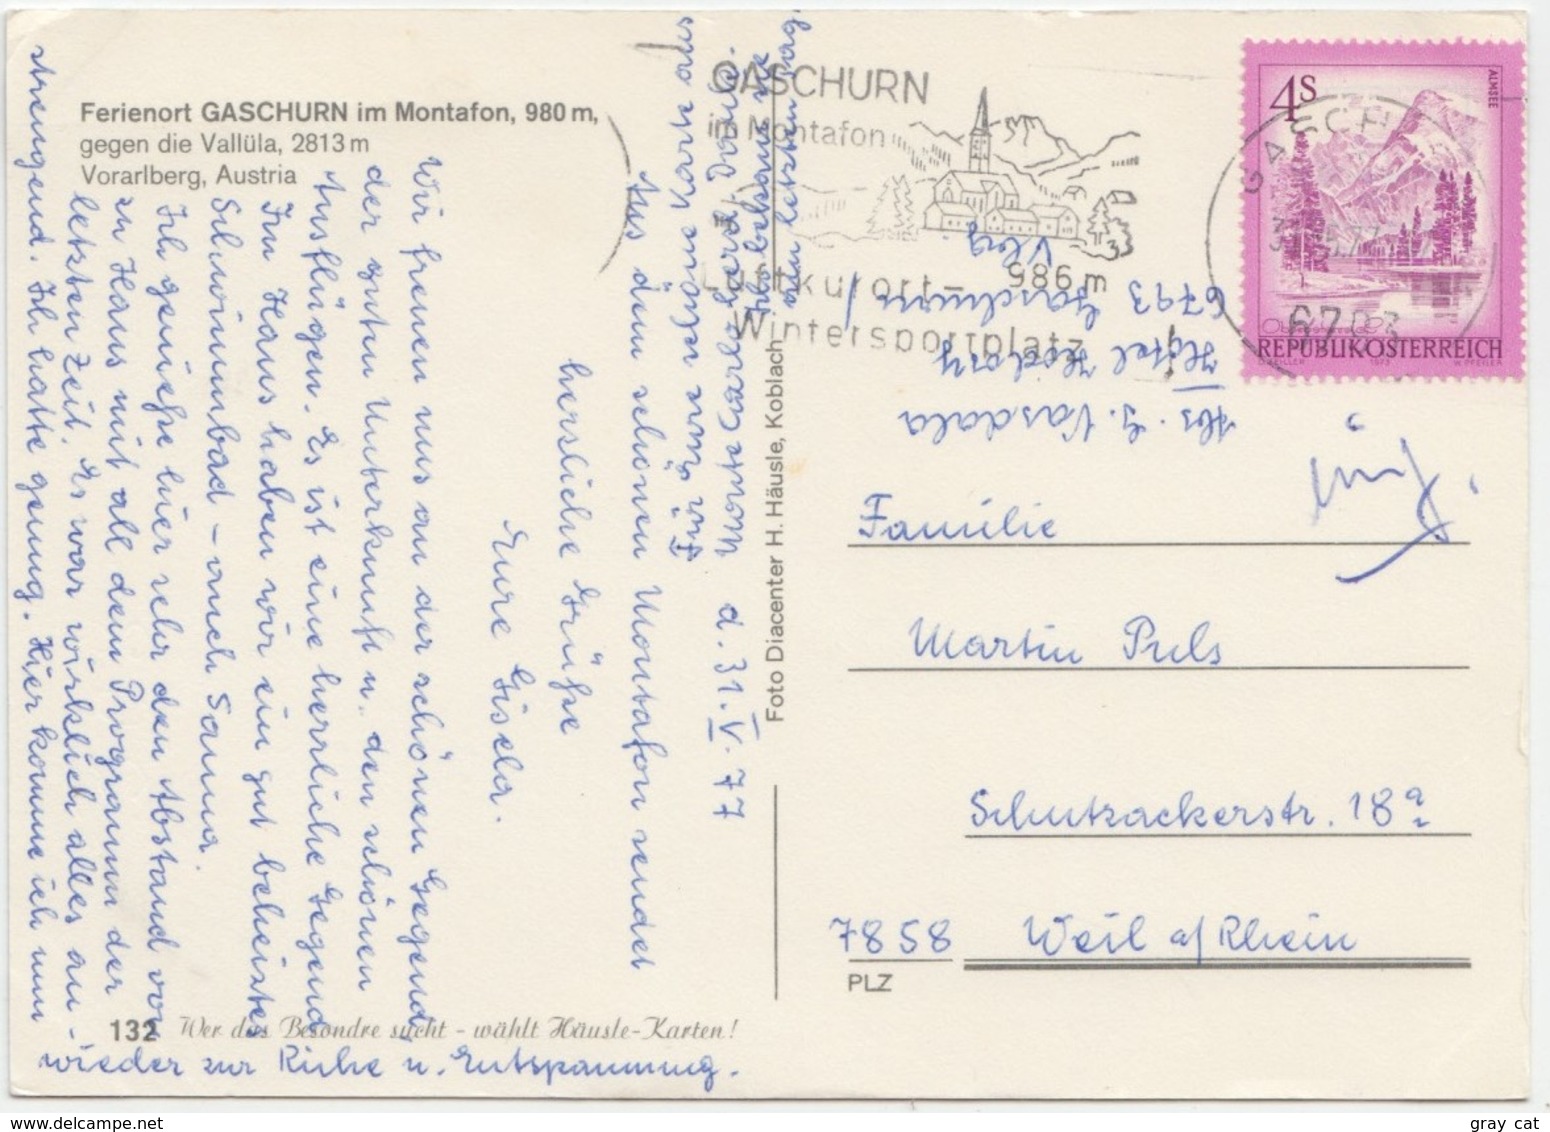 Ferienort GASCHURN Im Montafon, 980 M, Vorarlberg, Austria, 1977 Used Postcard [22016] - Gaschurn